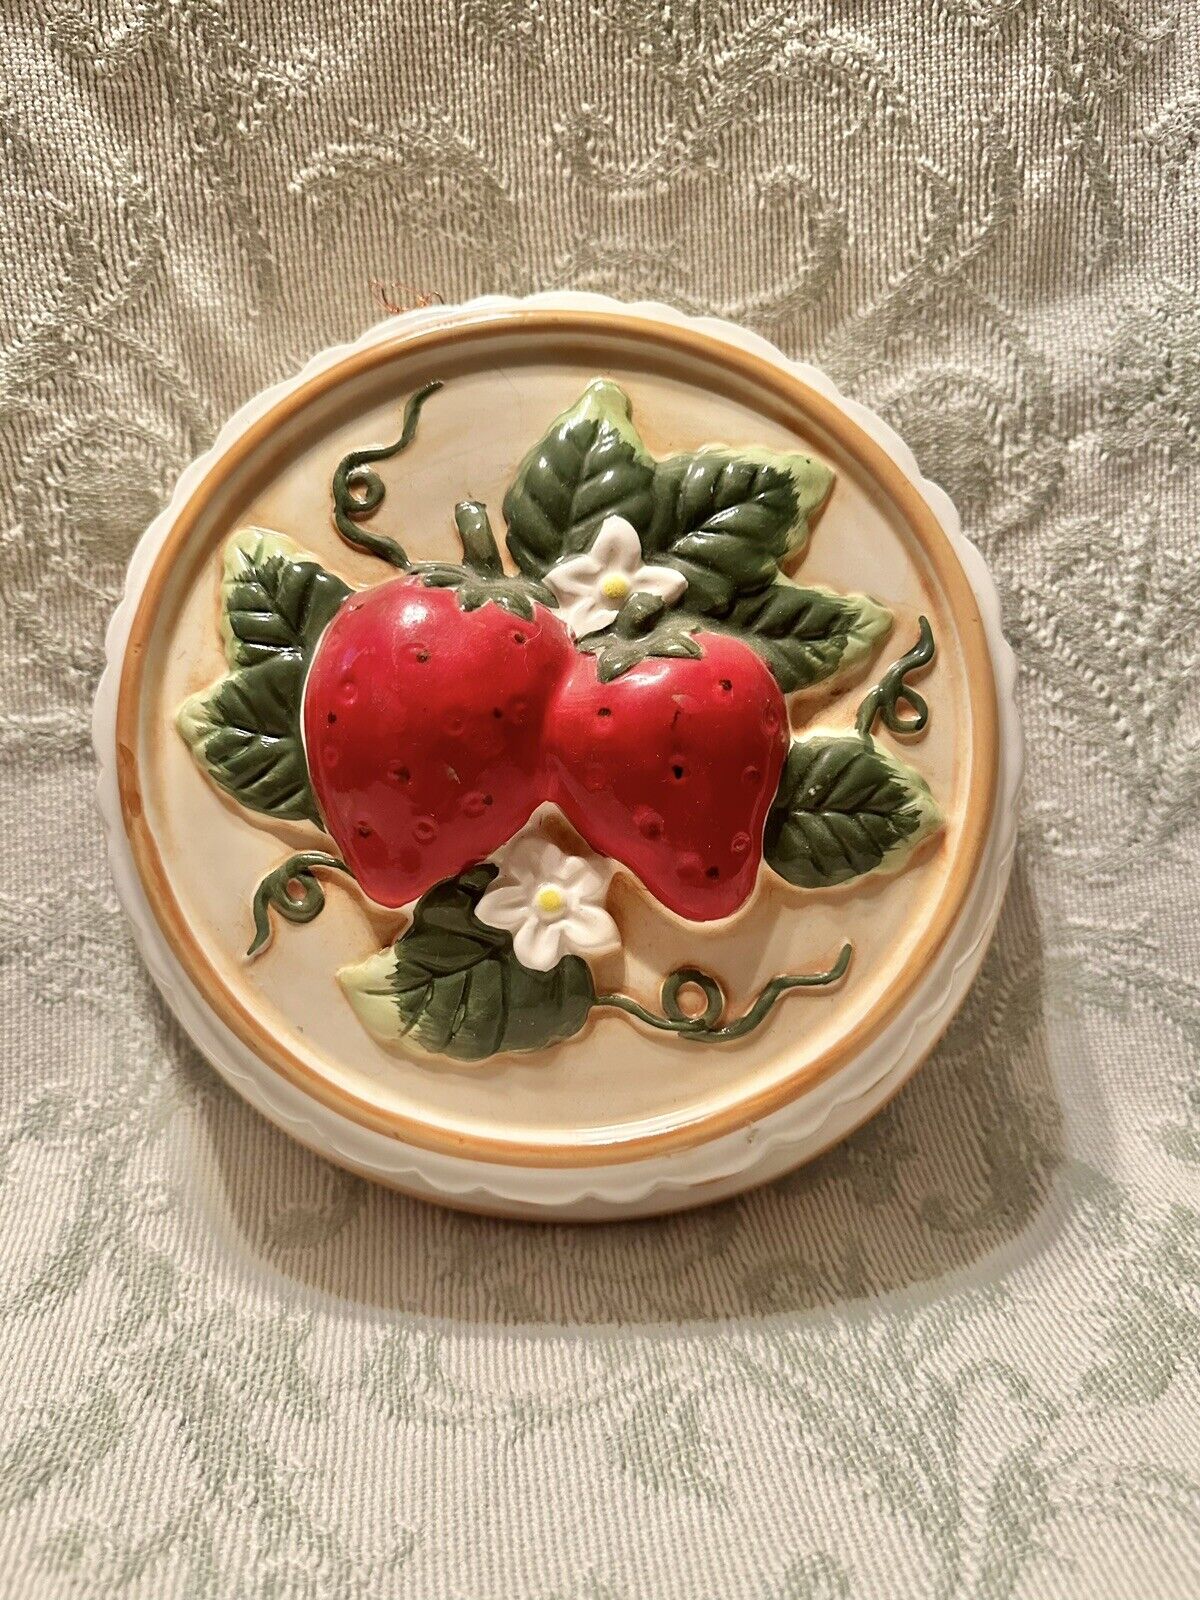 Vintage Ceramic Strawberry Jello Mold-Retro Kitchen Decor & Collectible